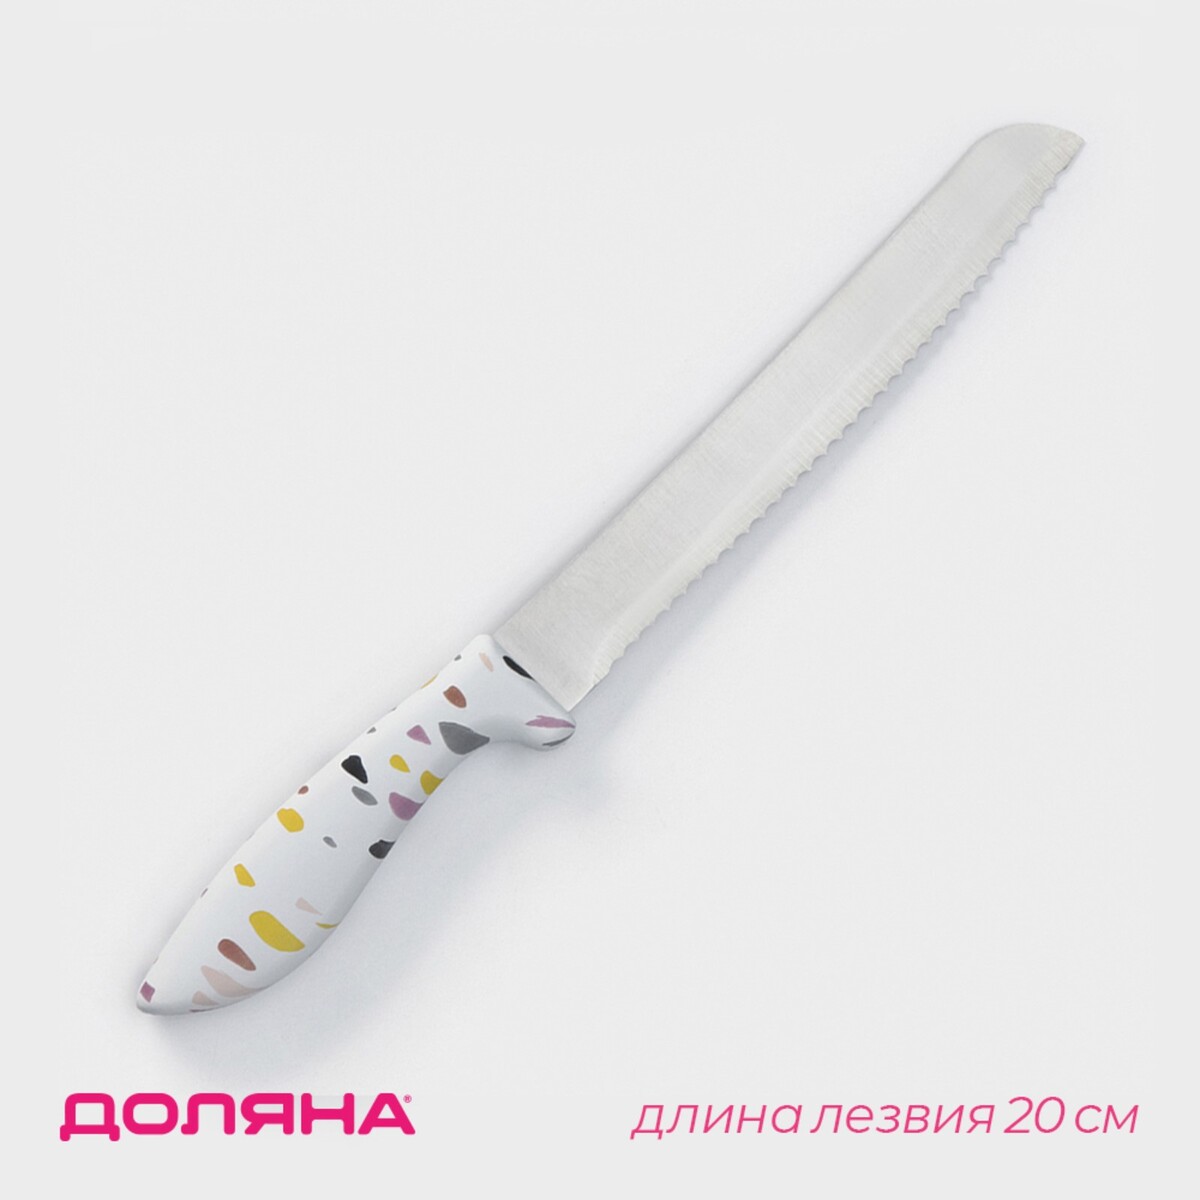 Нож для хлеба доляна sparkle, лезвие 20 см, цвет белый нож кухонный универсальный доляна sparkle лезвие 12 5 см белый